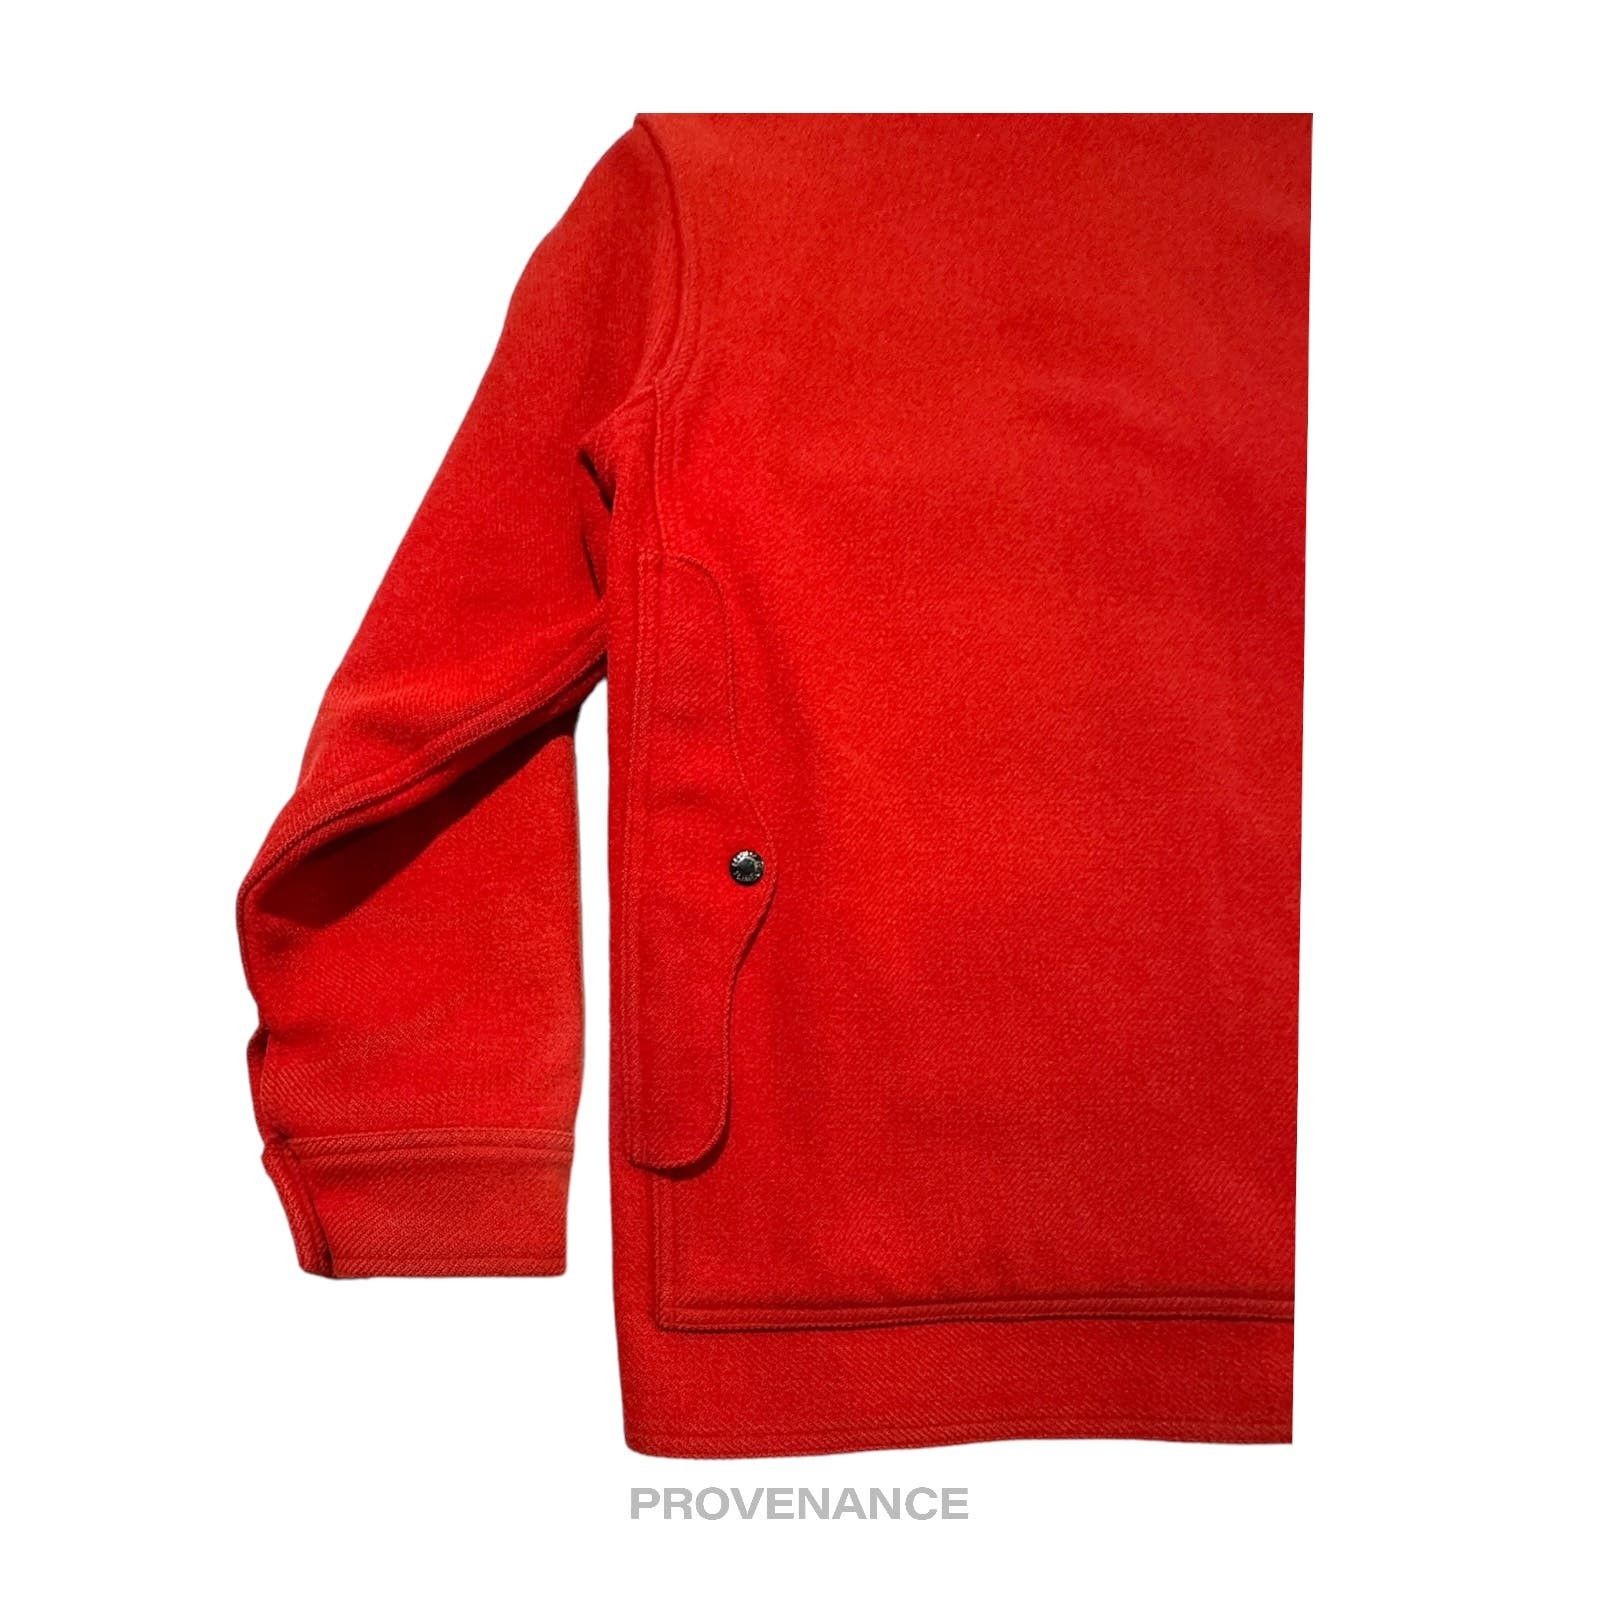 Filson 🔴 Filson Mackinaw Wool Cruiser Jacket - Scarlet Red 42 M Size US M / EU 48-50 / 2 - 7 Thumbnail